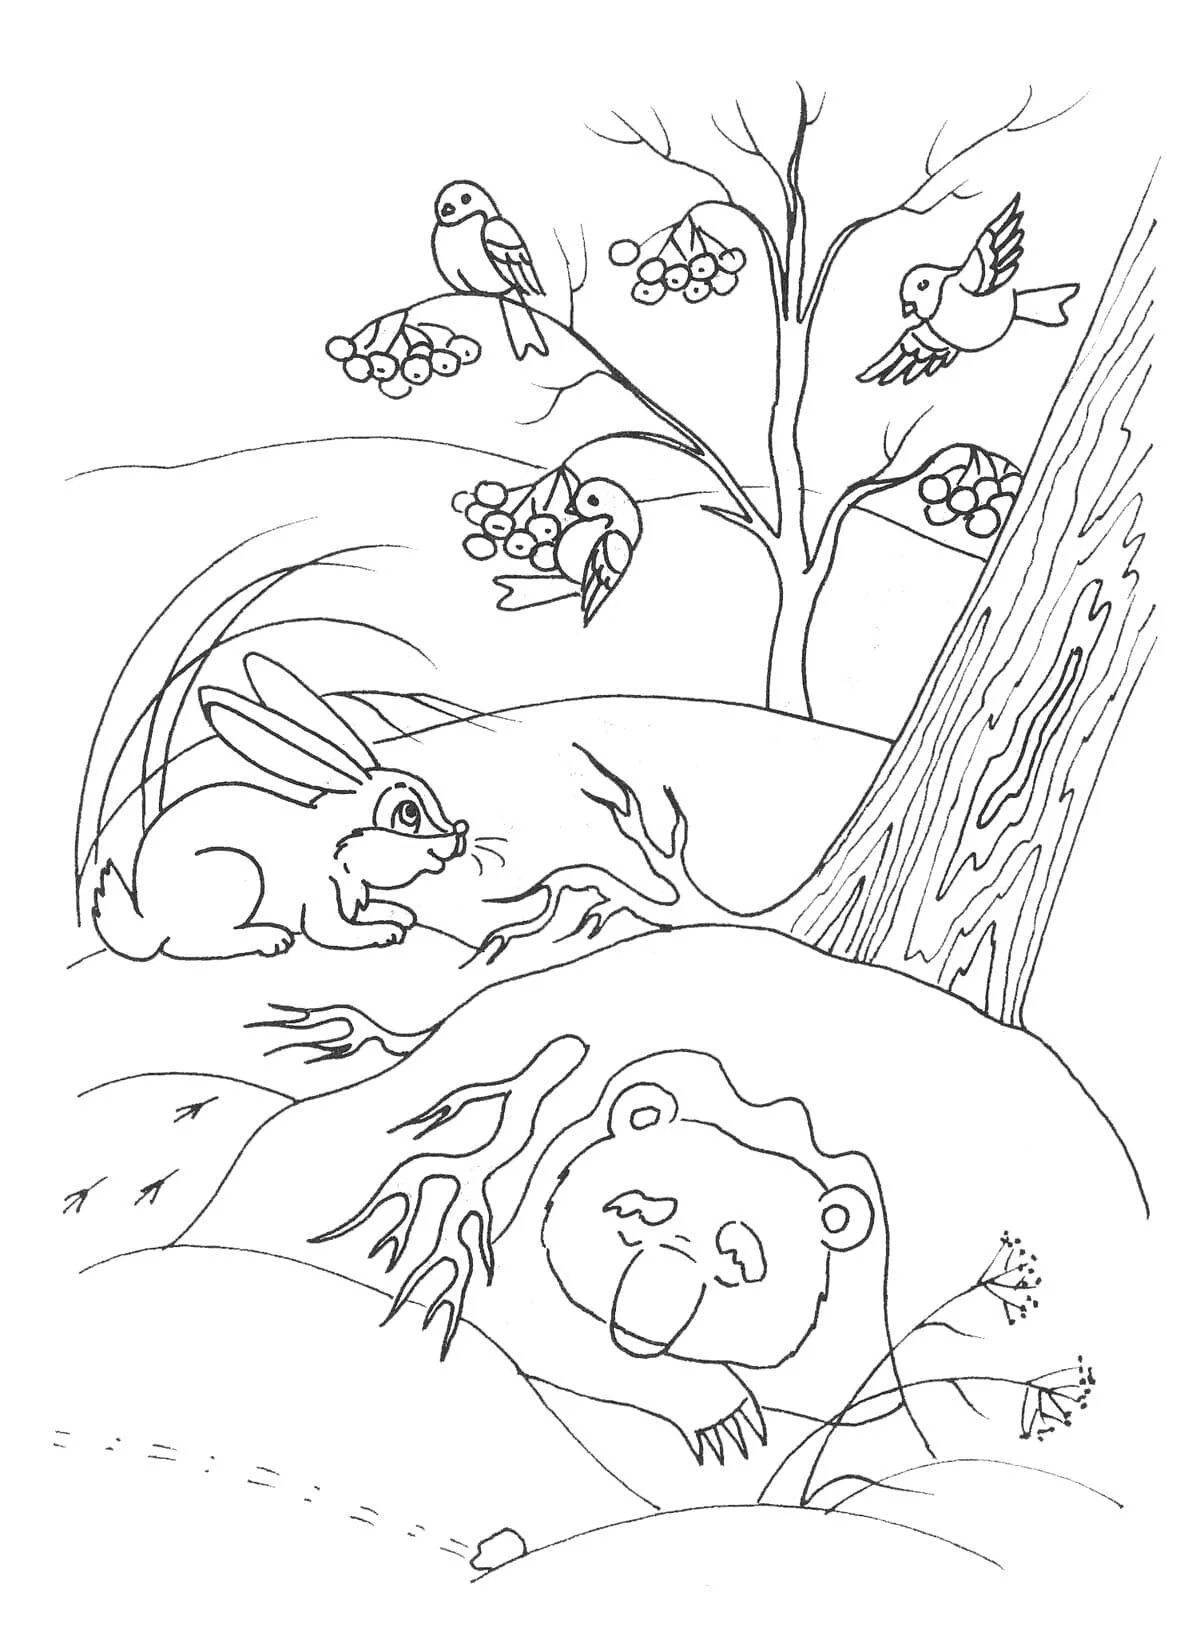 Великолепная раскраска: почему медведи спят зимой?